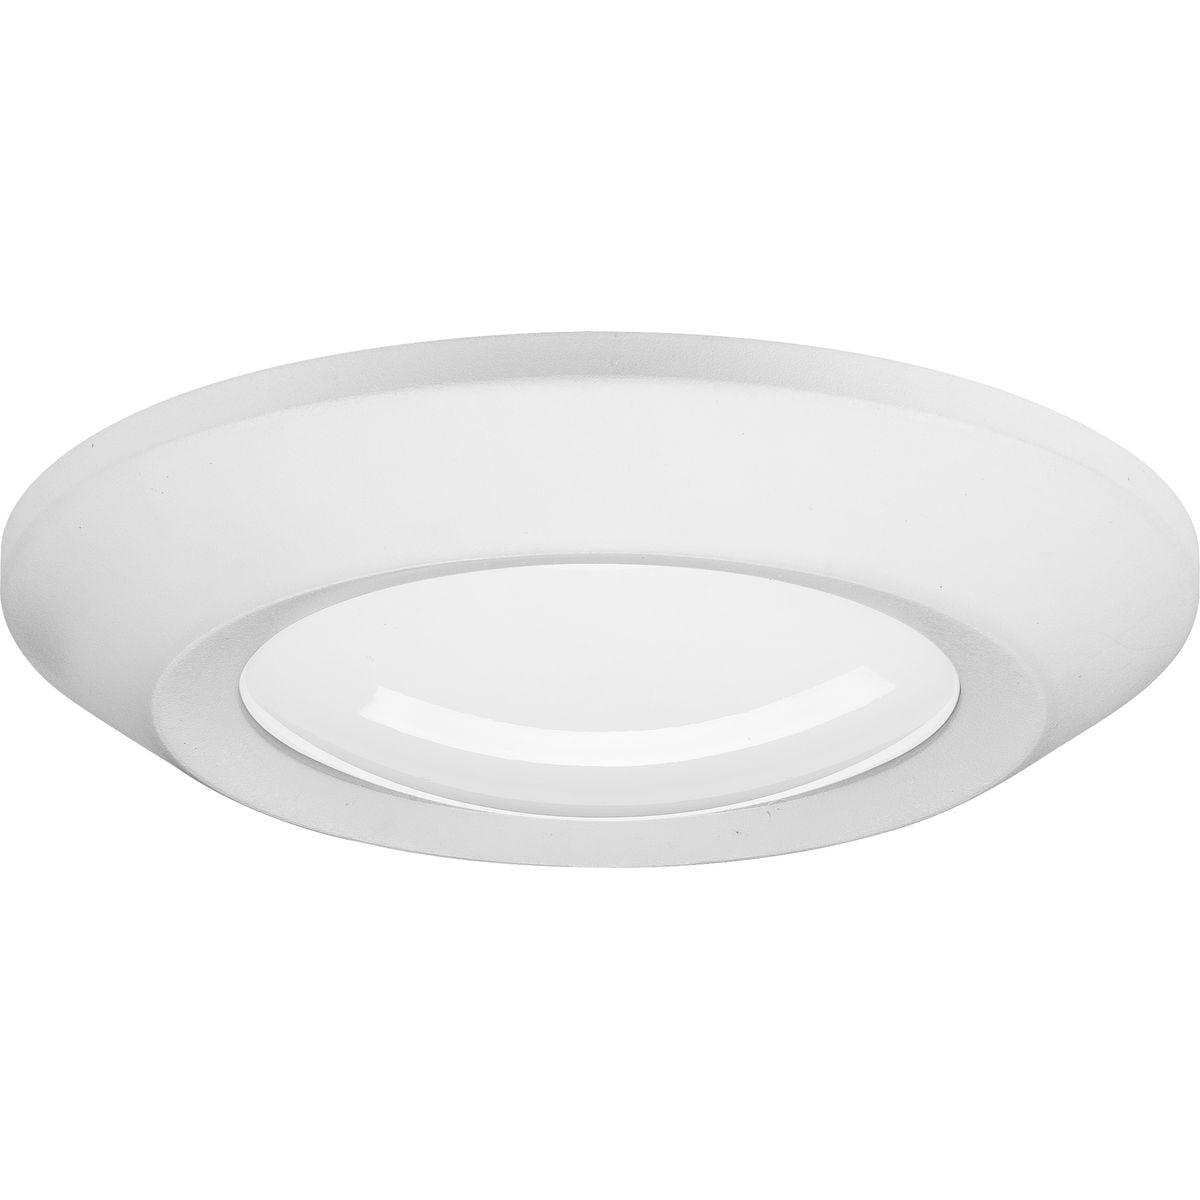 Sleek Modern White LED Surface Mount Light, Energy-Efficient 5.5"